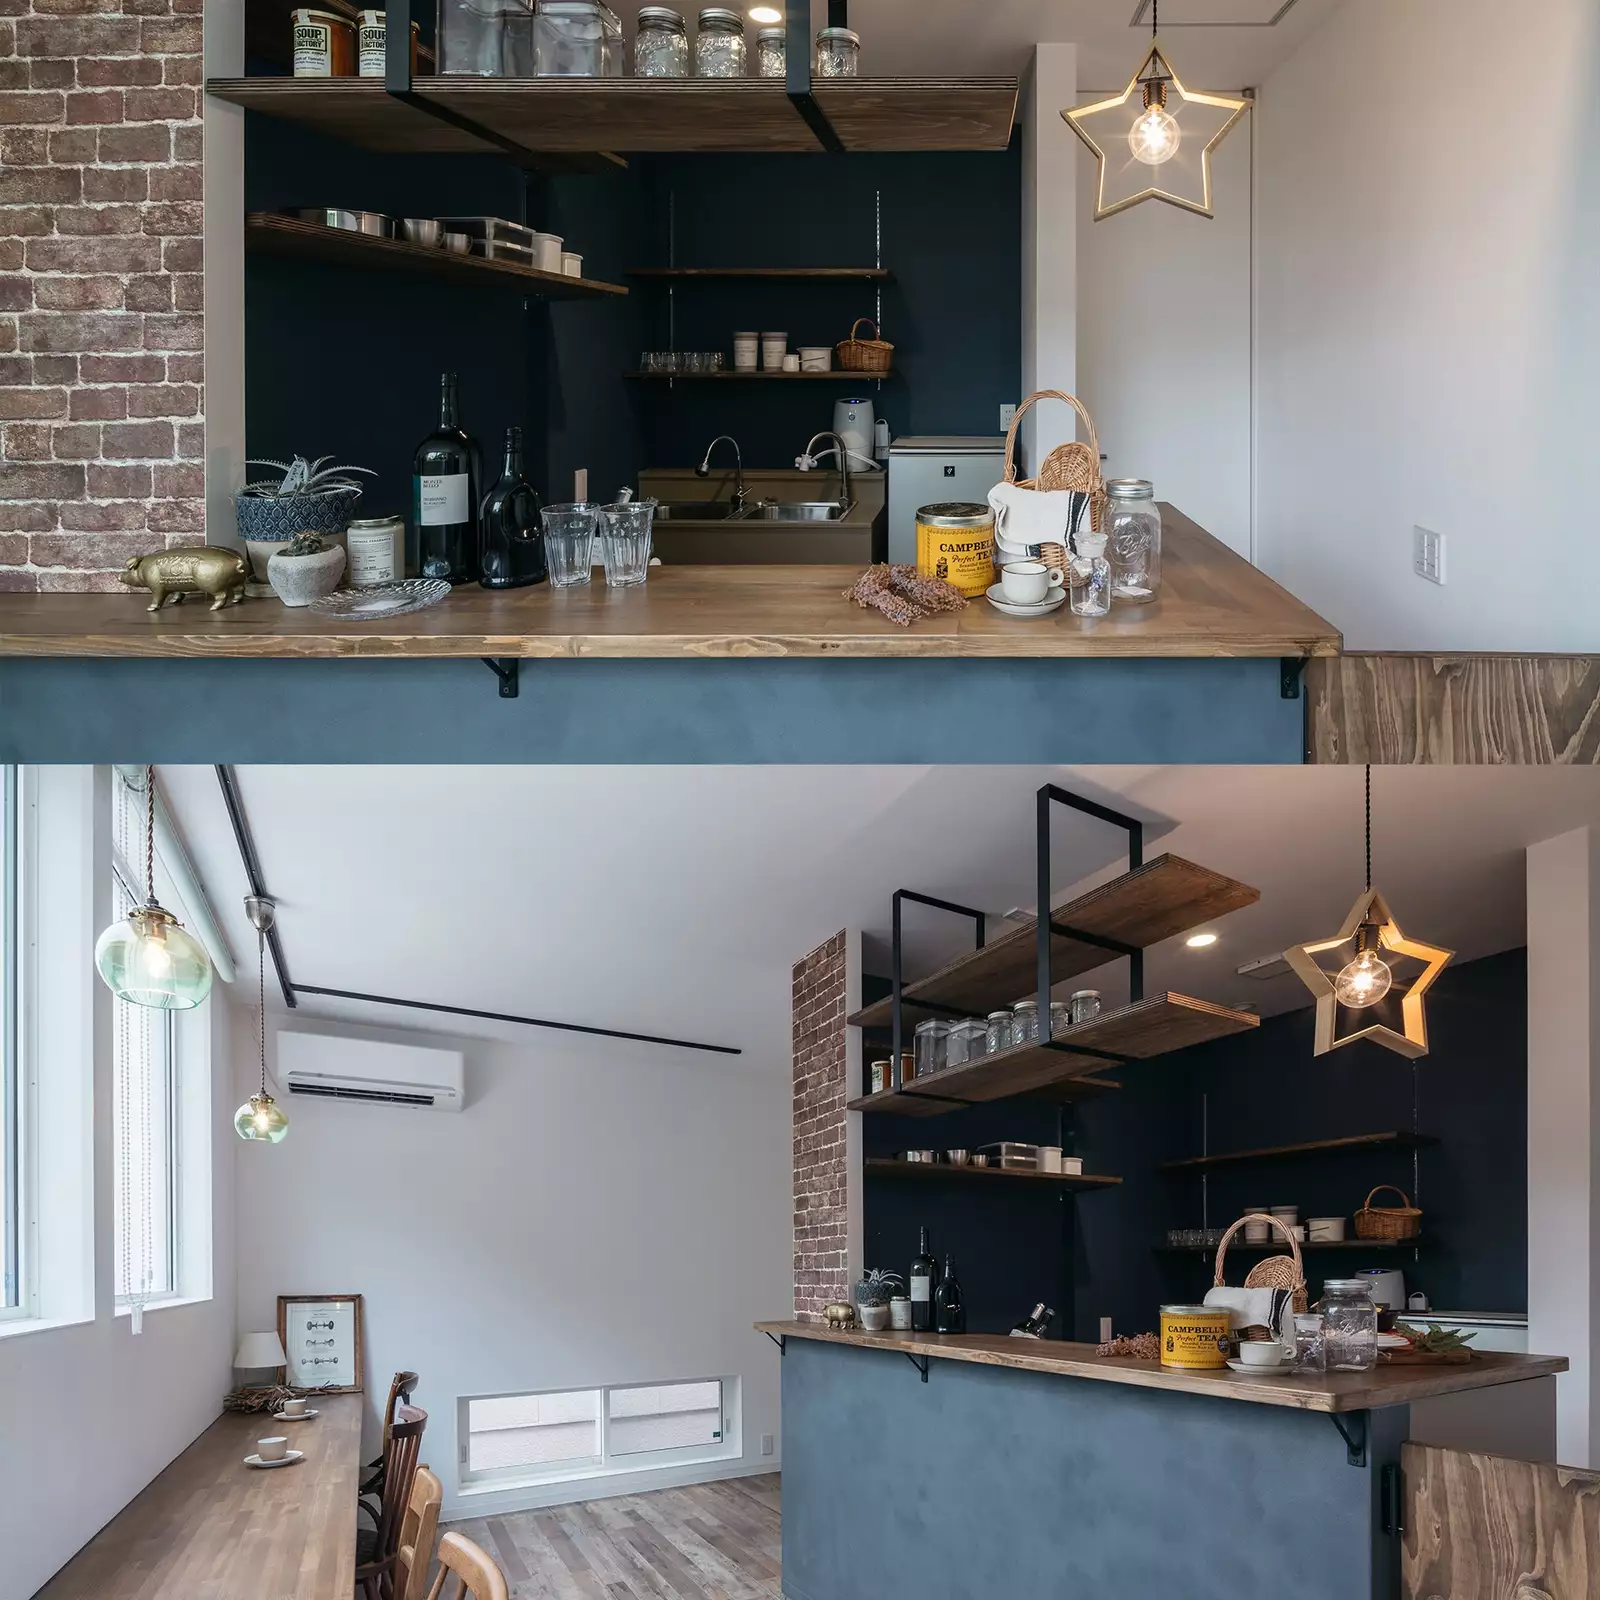 R+houseの物件のカフェスペースの写真です。上はカフェキッチンを正面から写したもの。下はカフェ全体を横から写したもの。落ち着いた色合いのおしゃれなカフェ。